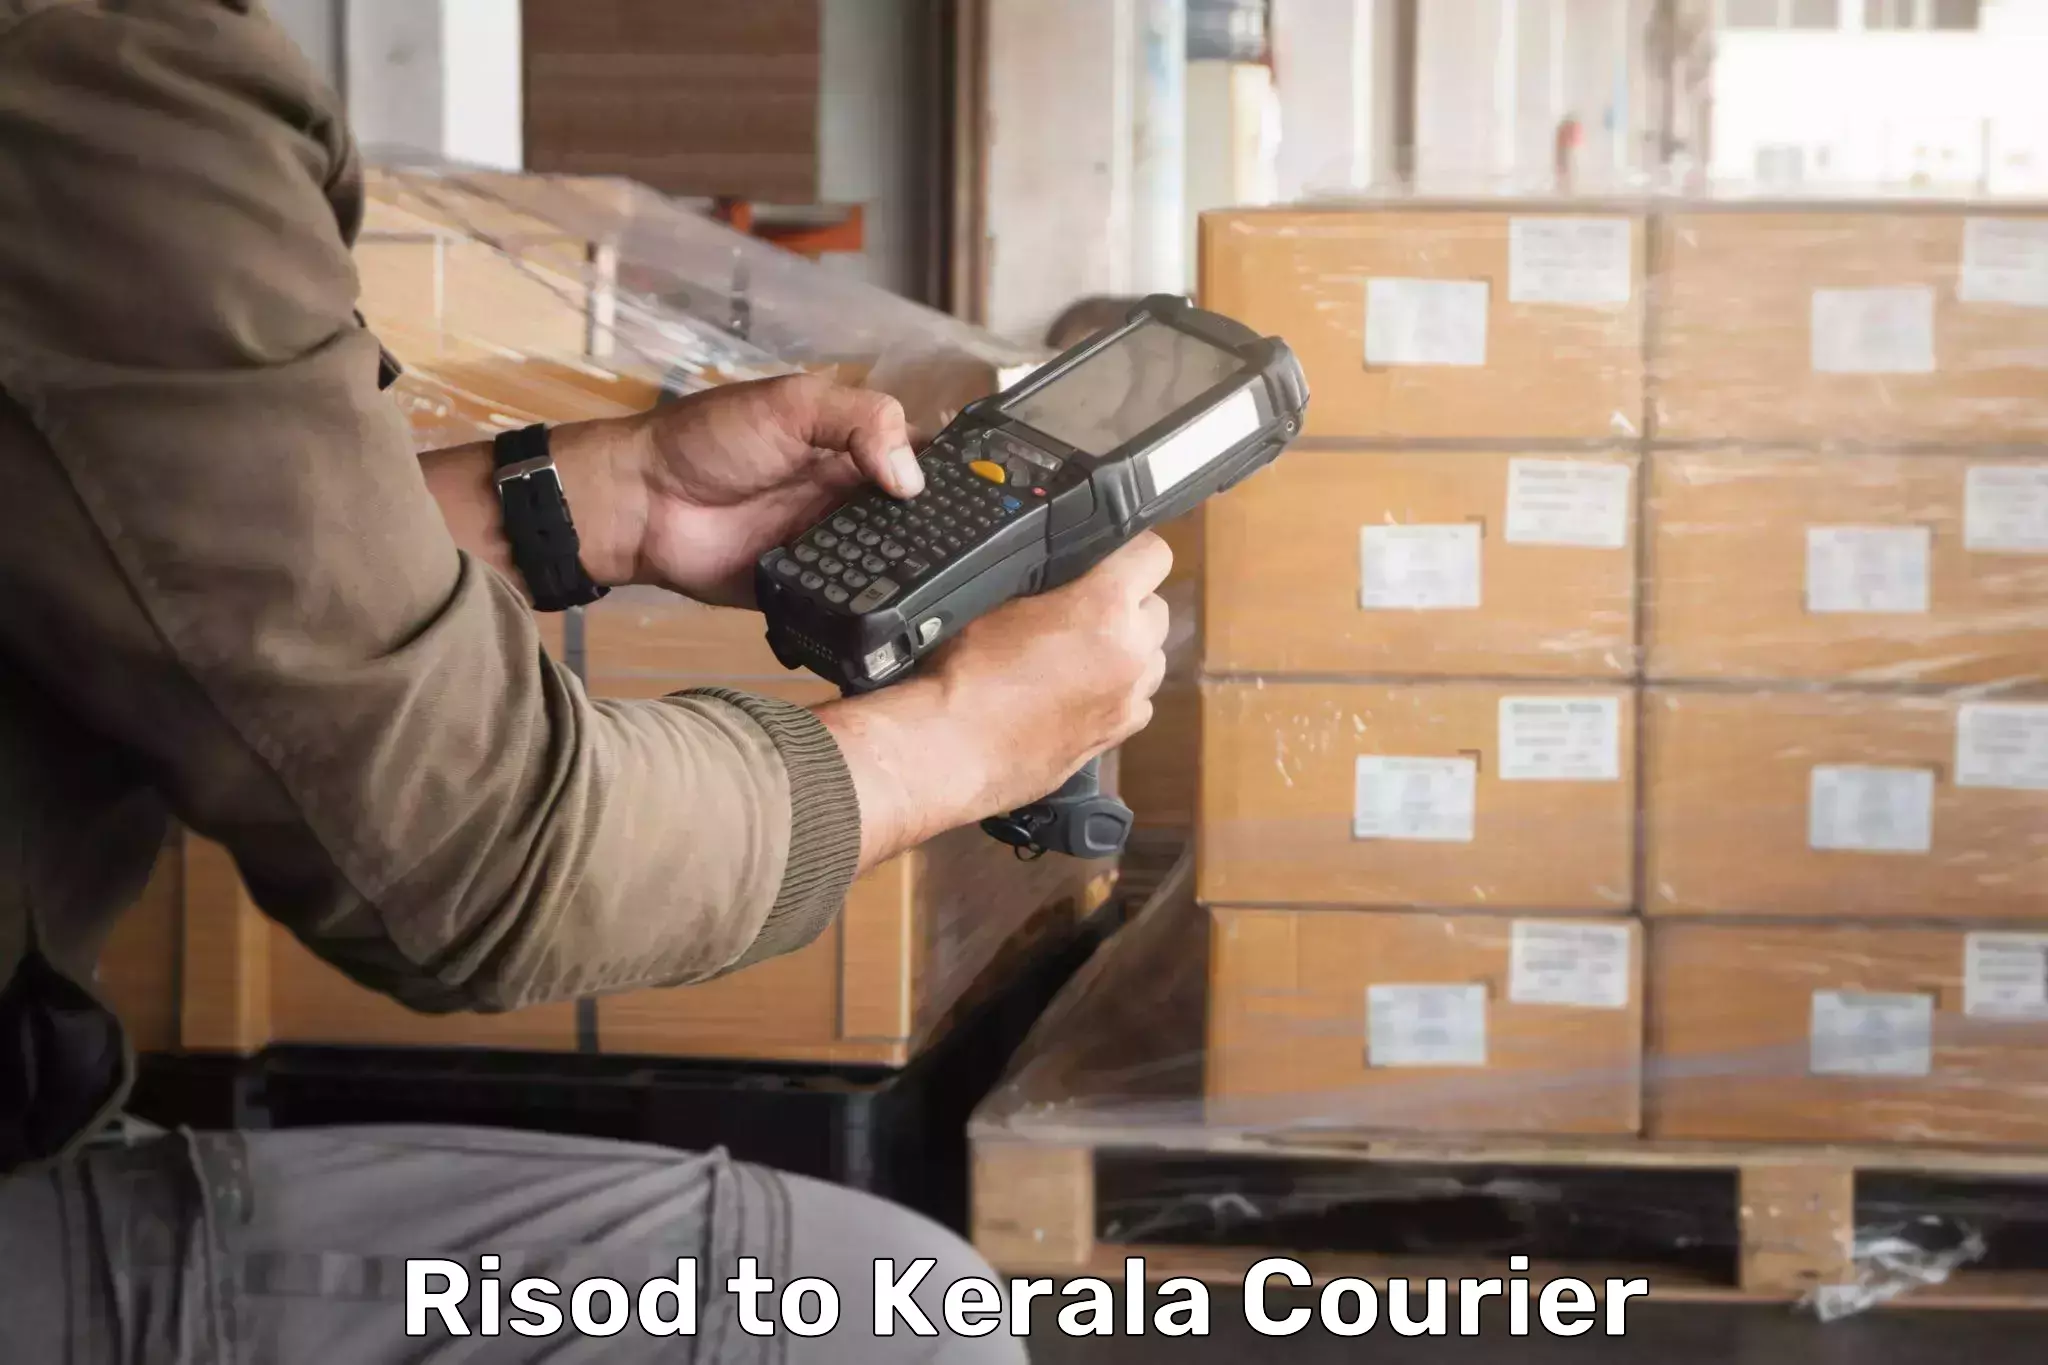 International parcel service Risod to Kerala